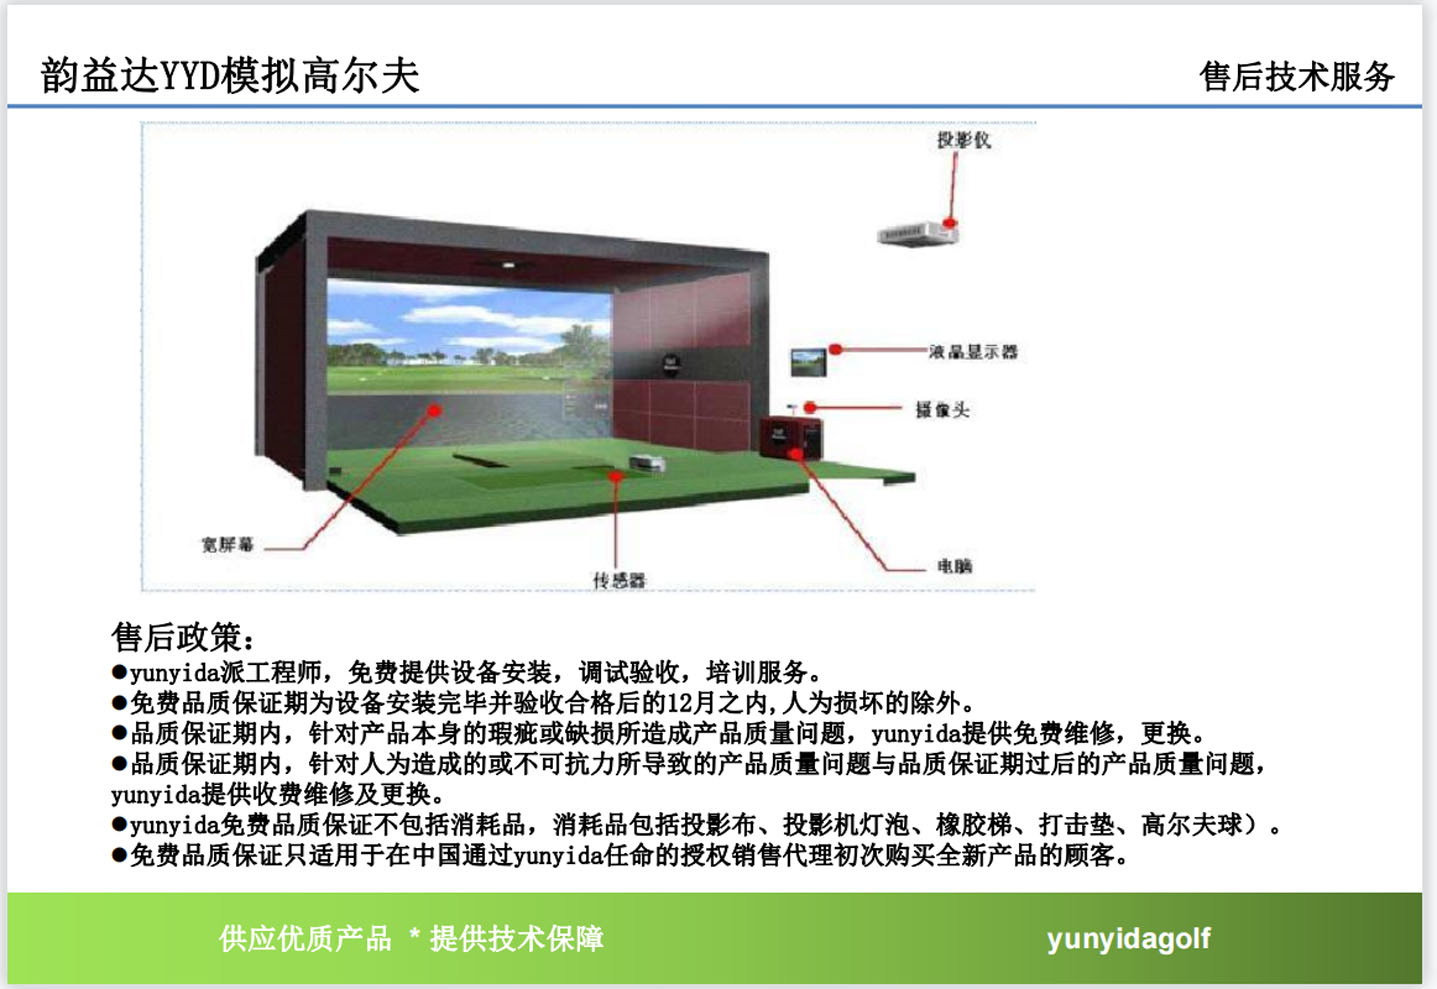 菏泽高尔夫模拟设备软件.jpg